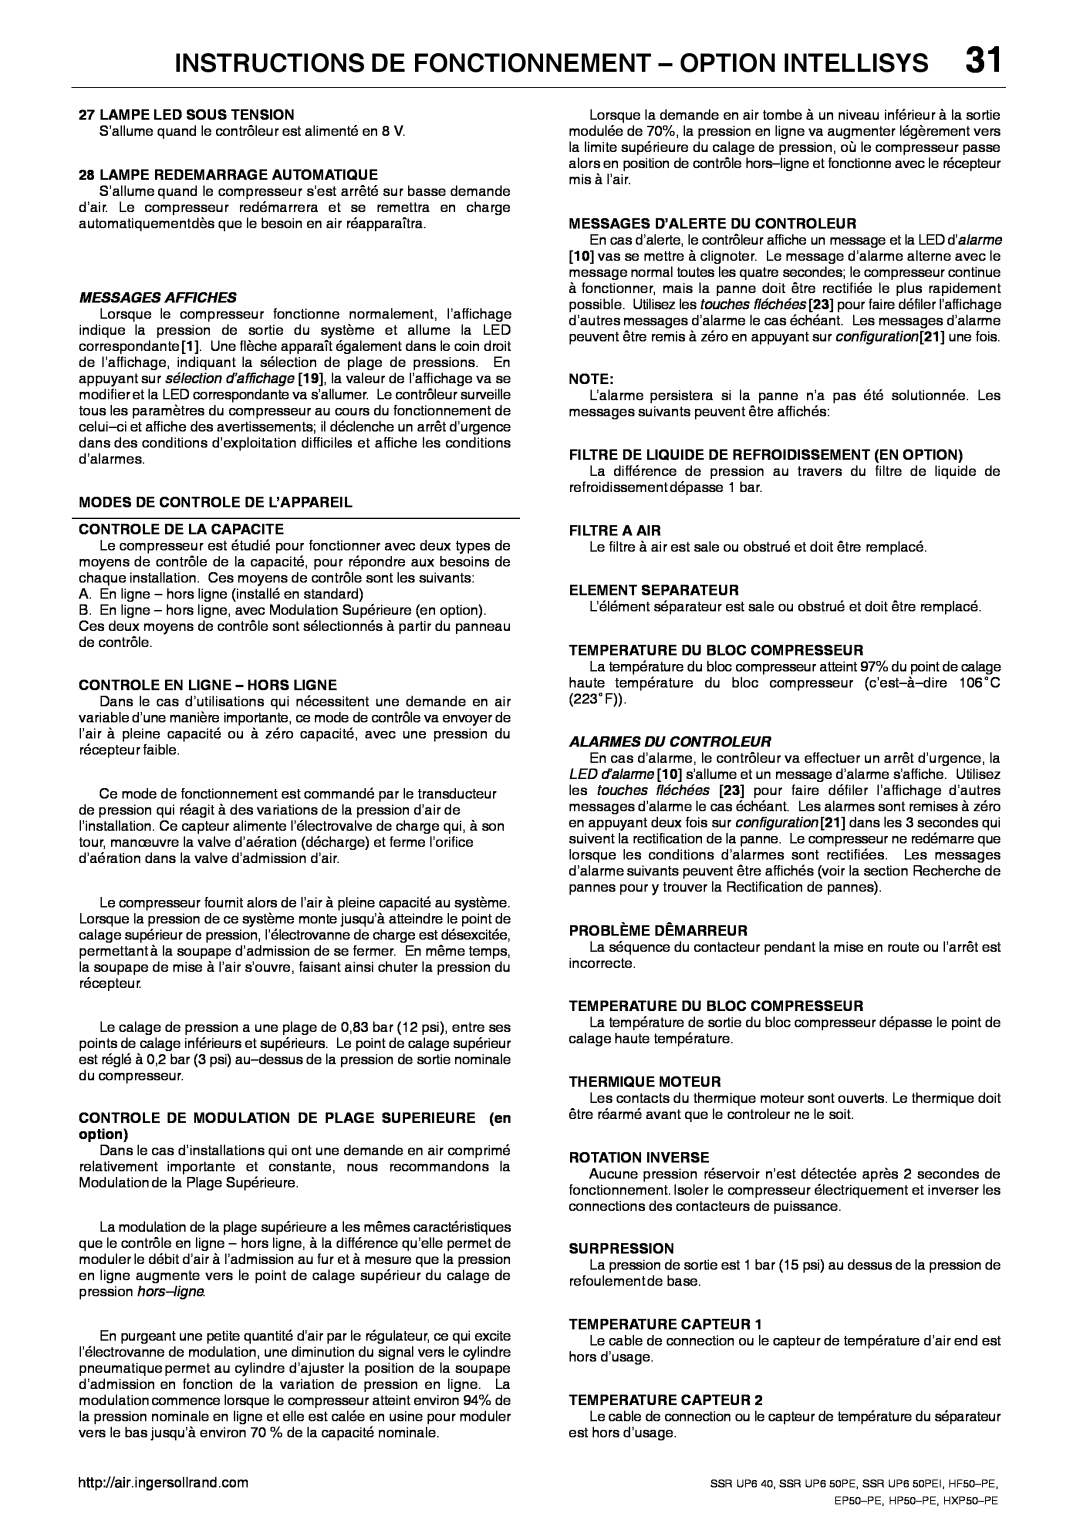 Ingersoll-Rand EP50-PE manual Instructions De Fonctionnement - Option Intellisys, Messages Affiches, Alarmes Du Controleur 